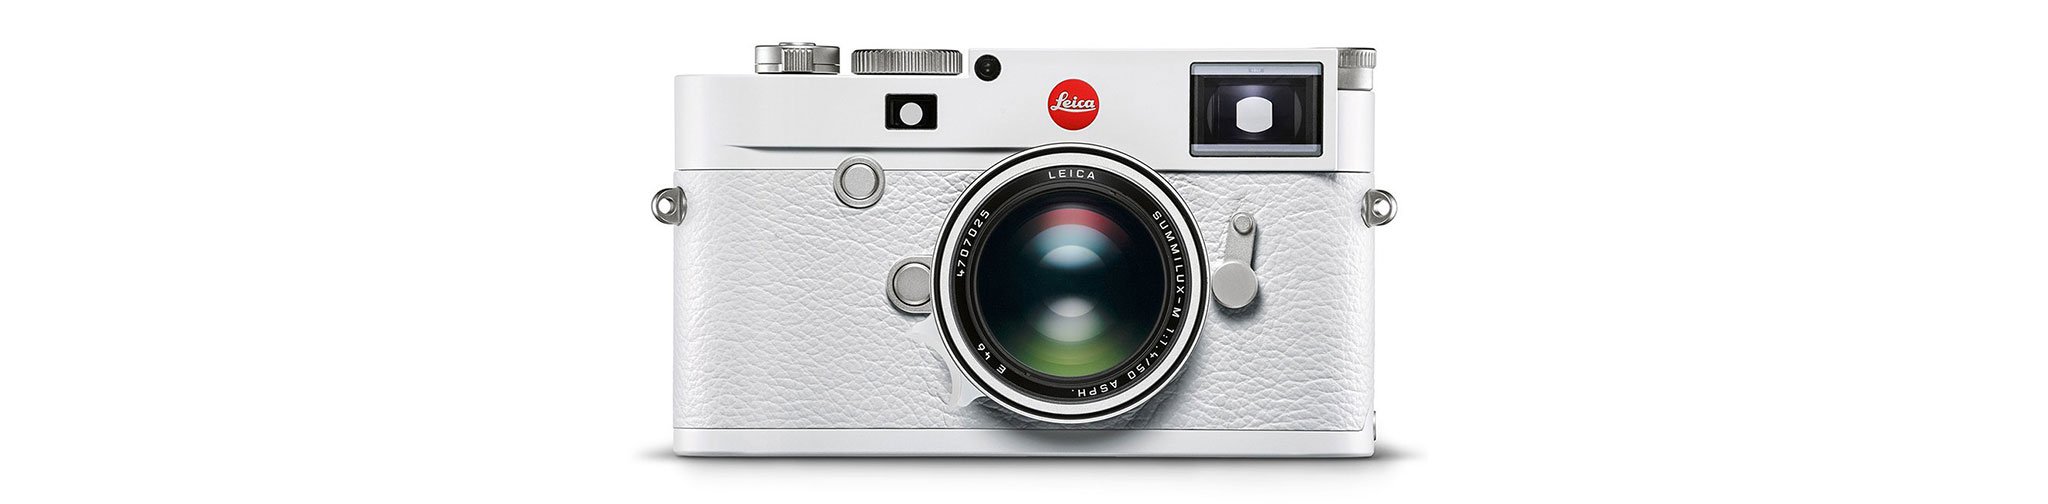 Leica ra mắt máy ảnh M10-P ‘White’ edition, phiên bản đặc biệt cho mùa đông cùng ống kính Summilux-M 50mm f/1.4 ASPH